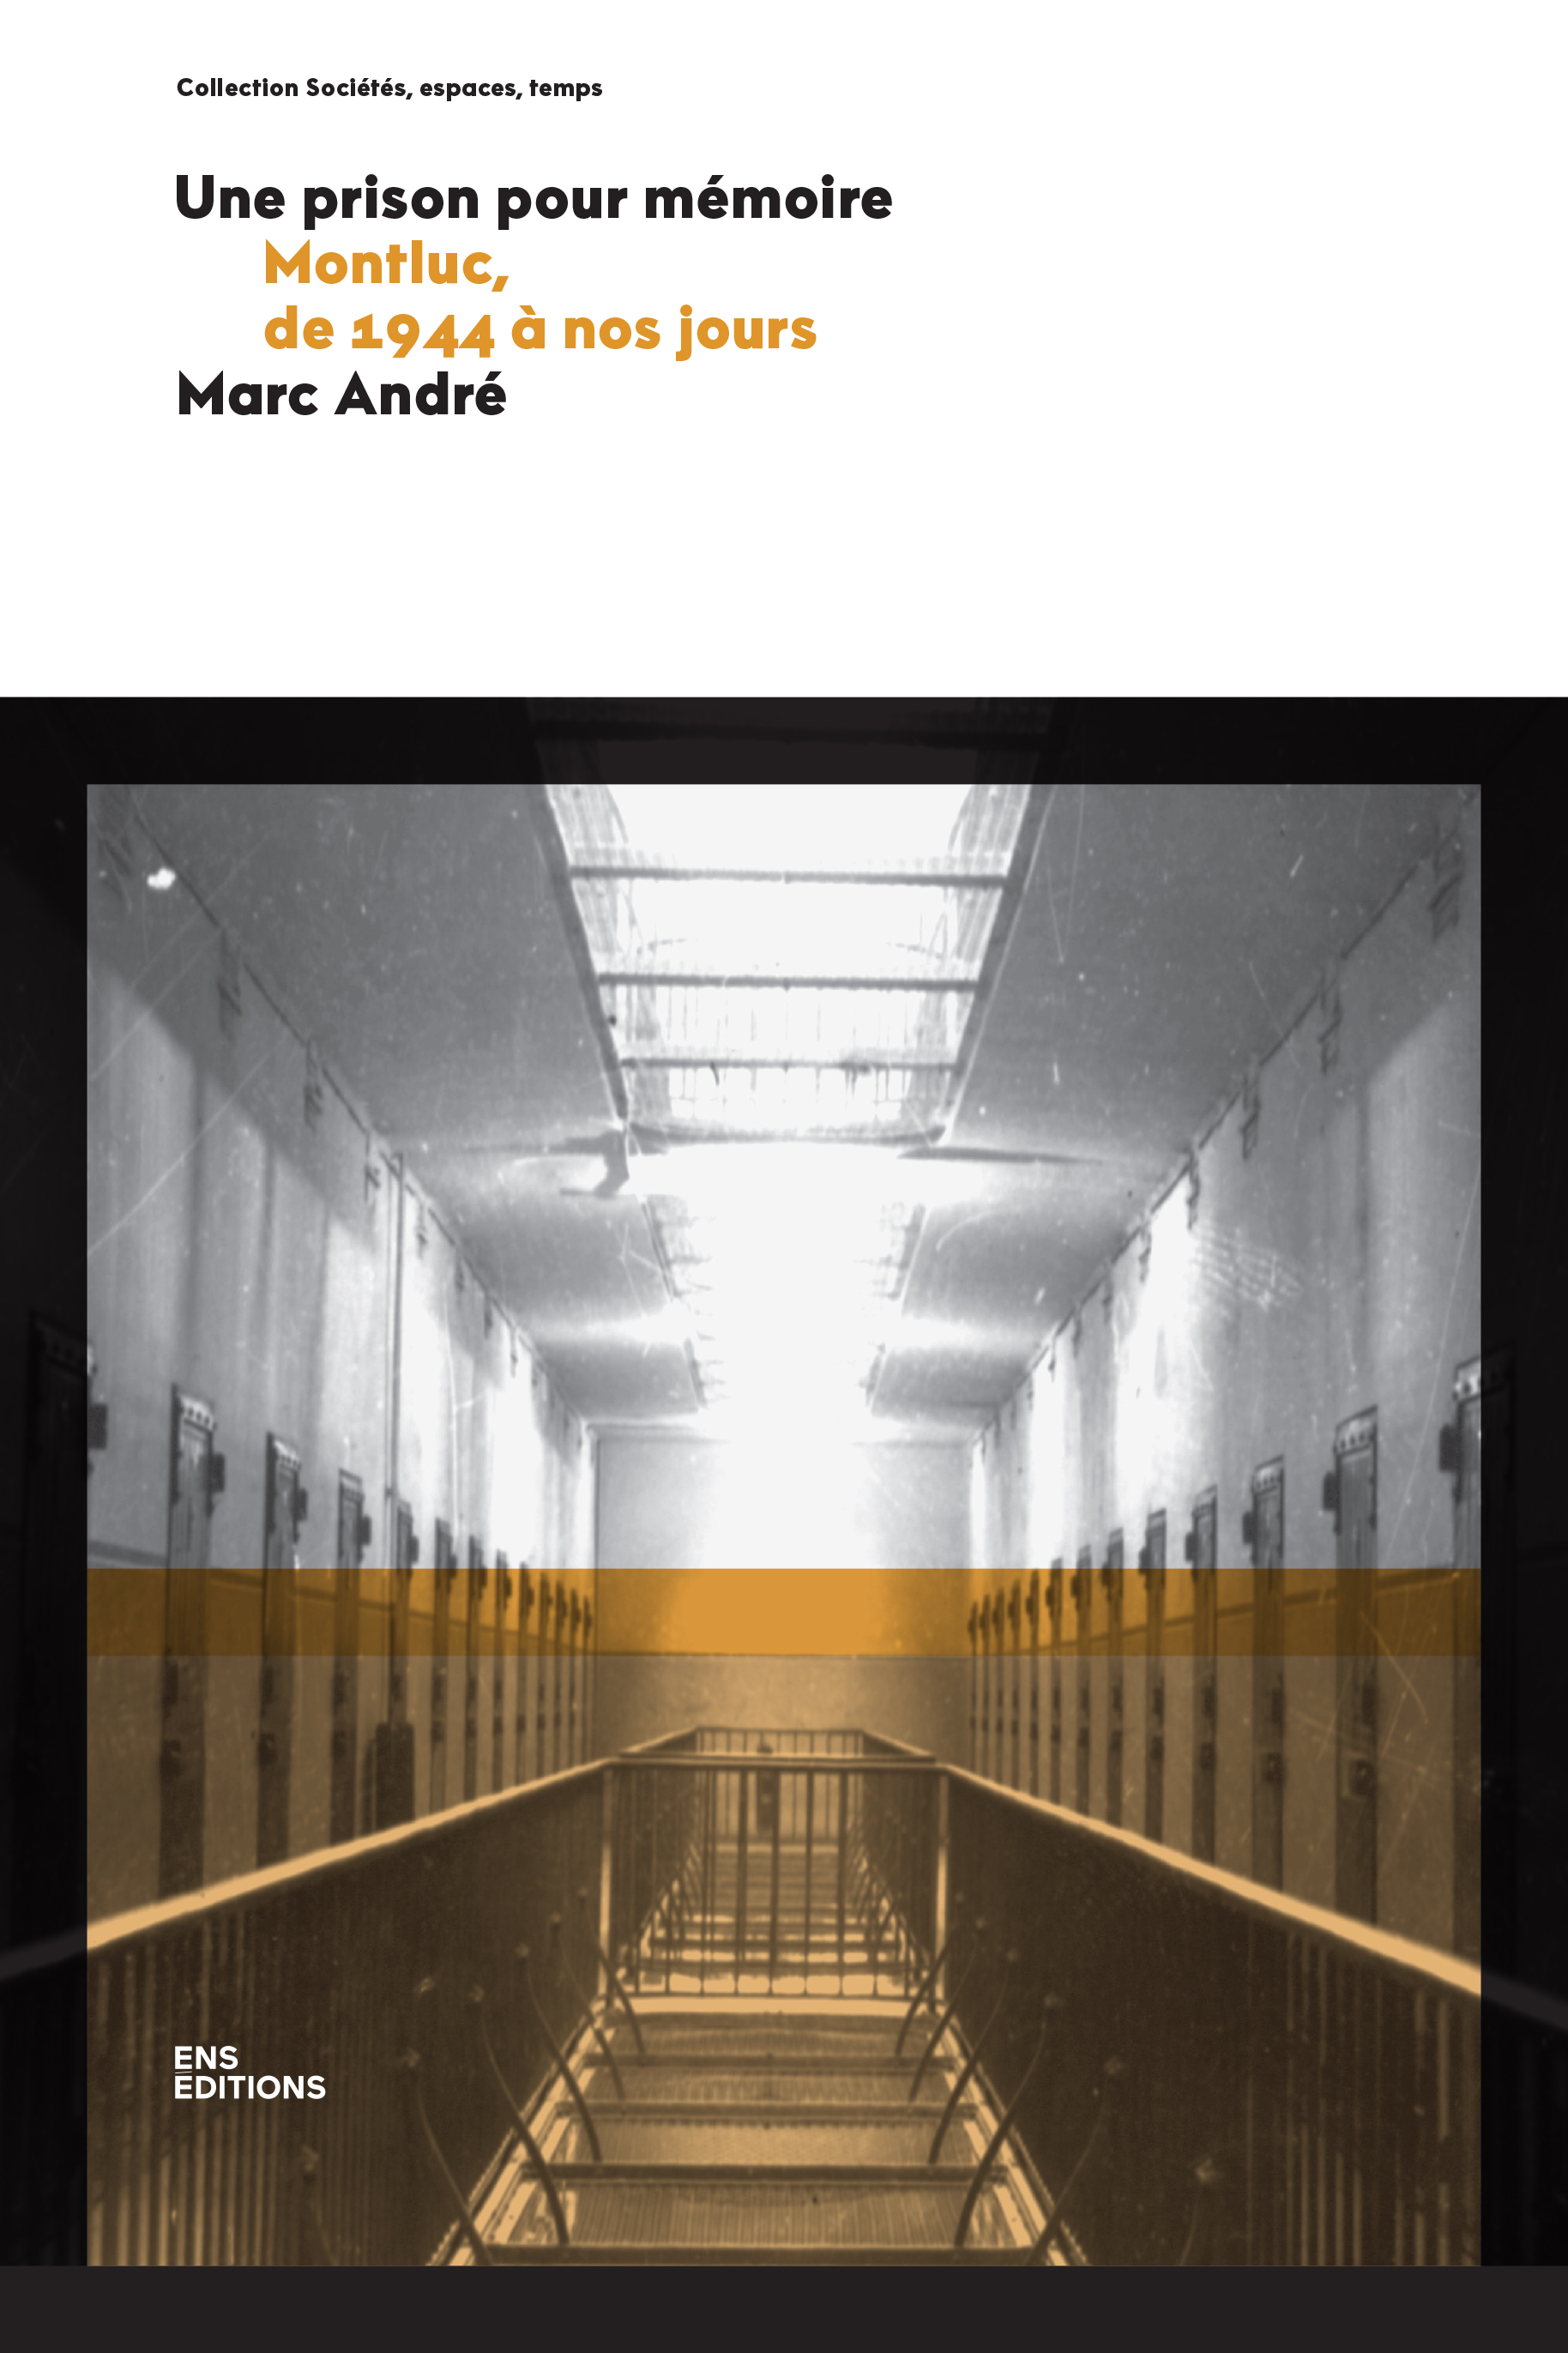 Couverture de l'ouvrage "Une prison pour mémoire" / Marc André